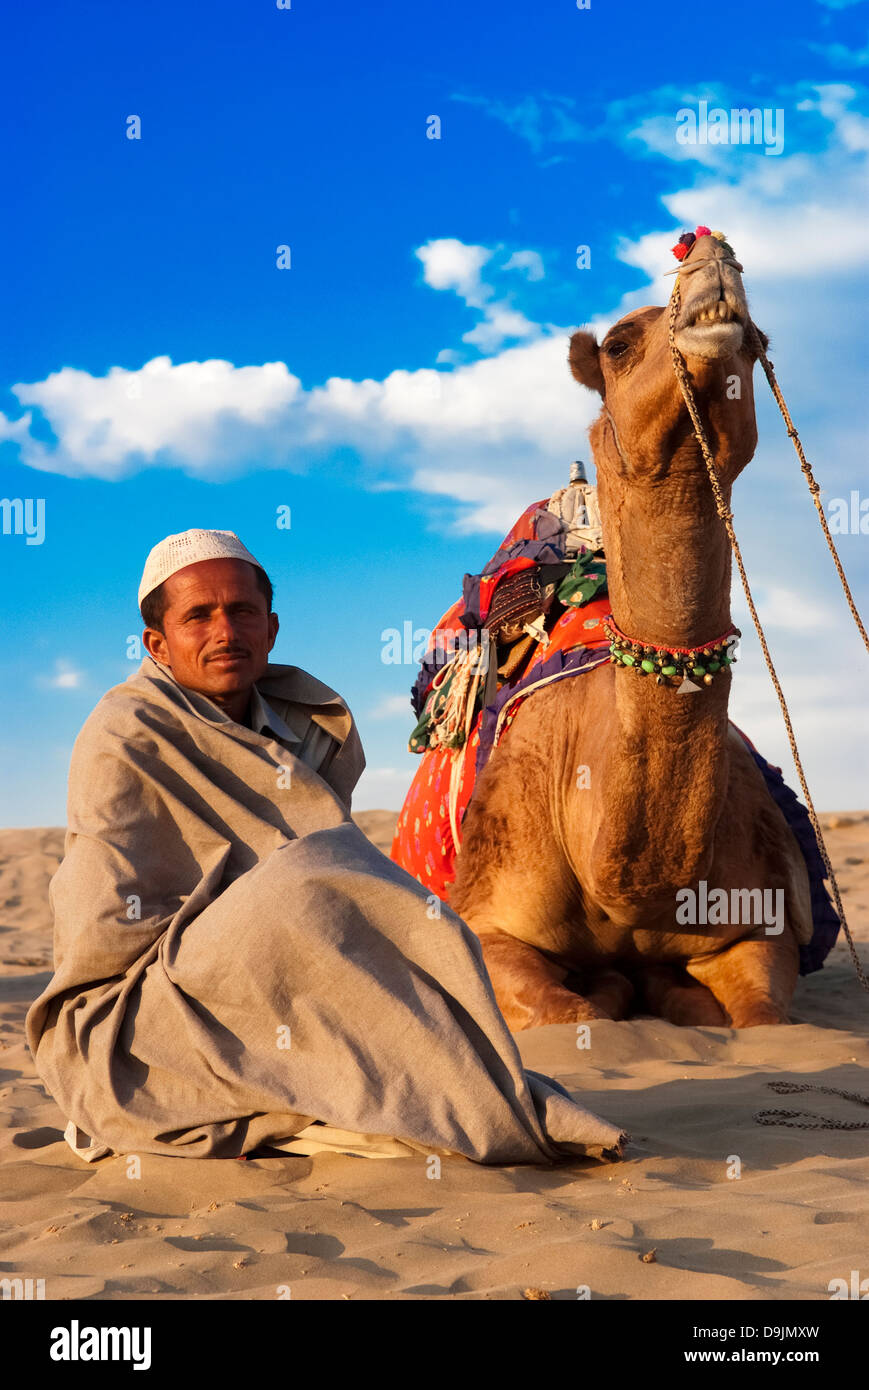 Chamelier attend que les clients des dunes de sable de Sam à Jaisalmer, Inde. Banque D'Images